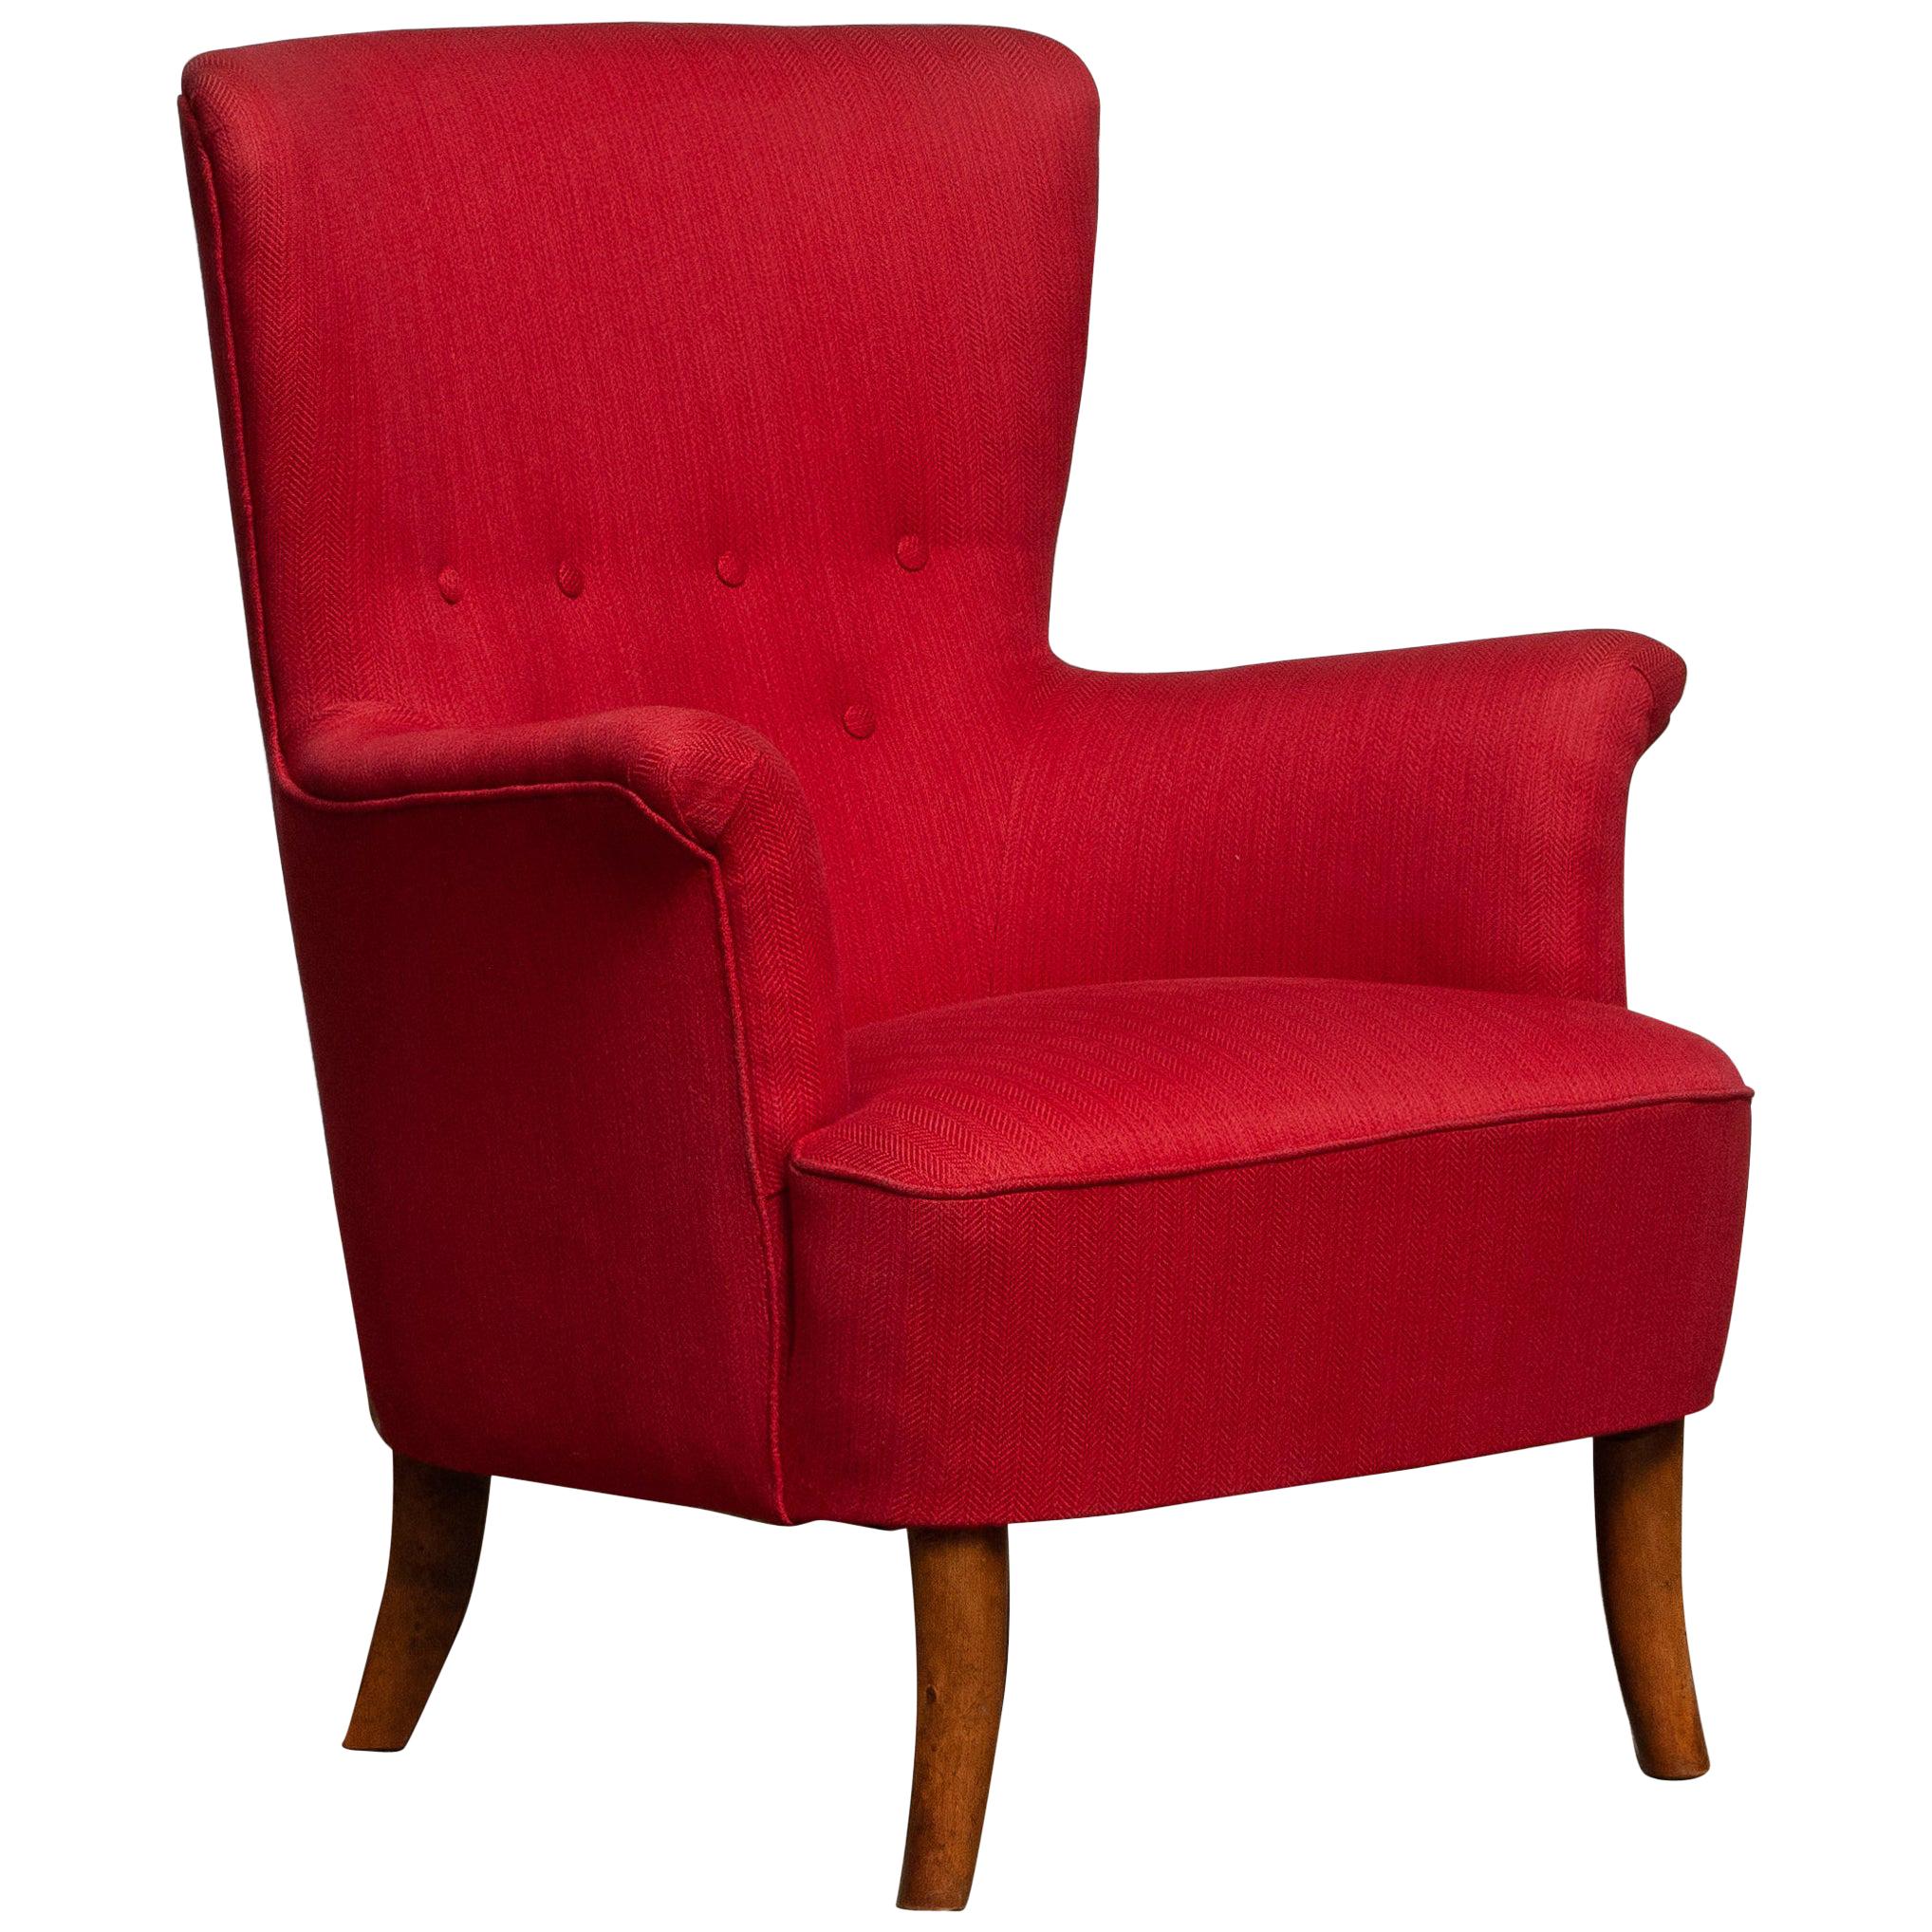 Mid-Century Modern 1940s, Fuchsia Easy or Lounge Chair by Carl Malmsten for Oh Sjogren, Sweden